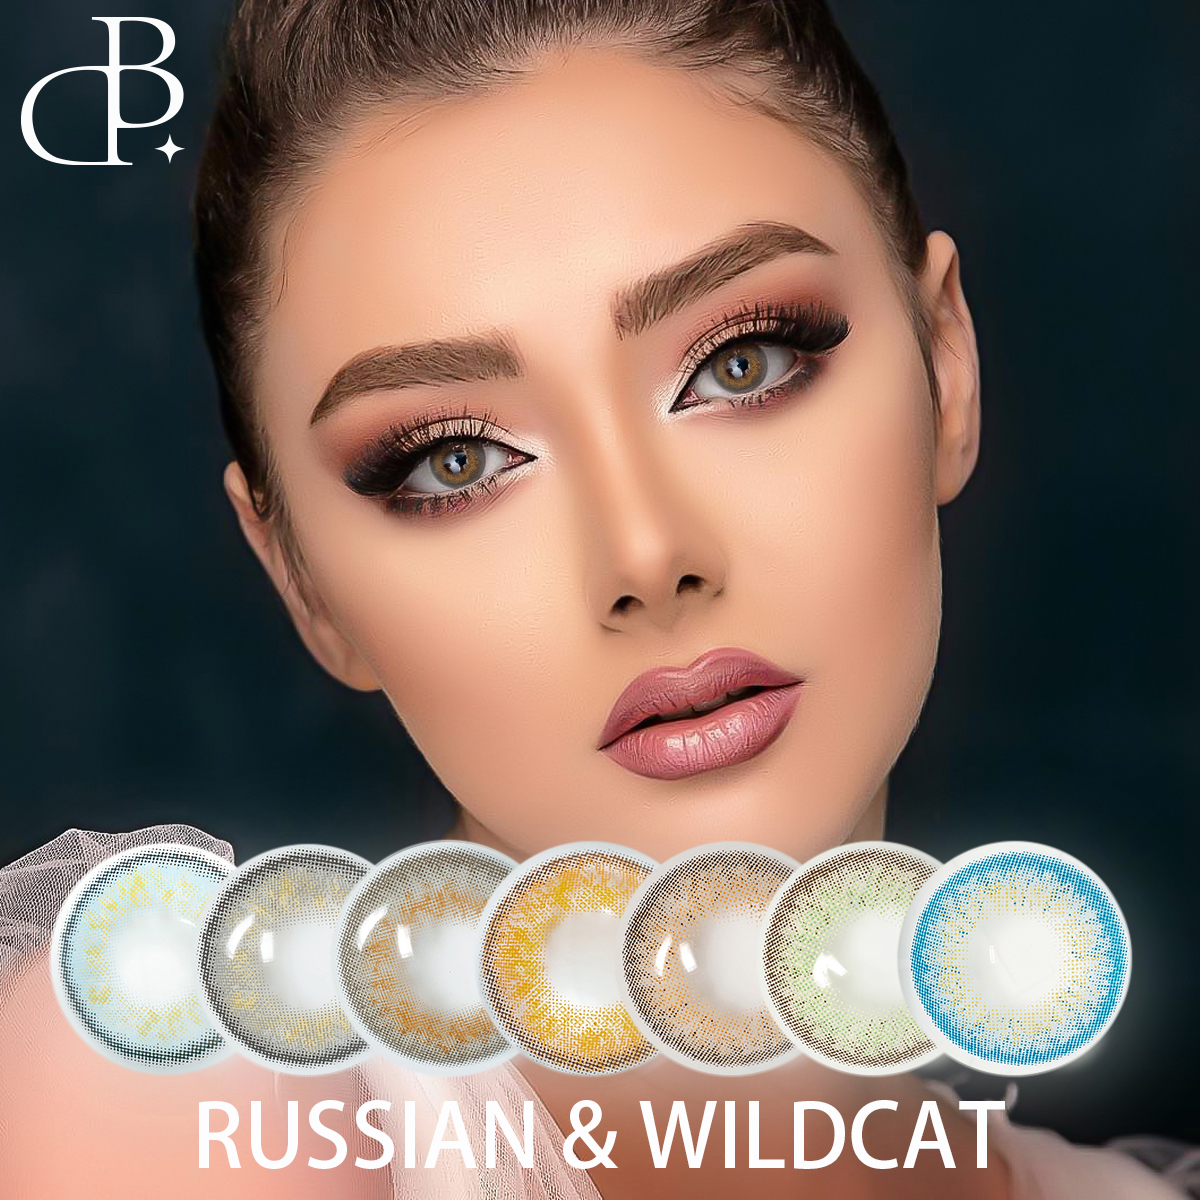 Russian&wild-cat Φυσικοί έγχρωμοι φακοί ματιών Χονδρική πώληση μαλακών έγχρωμων φακών επαφής φακοί επαφής με συνταγή Δωρεάν αποστολή